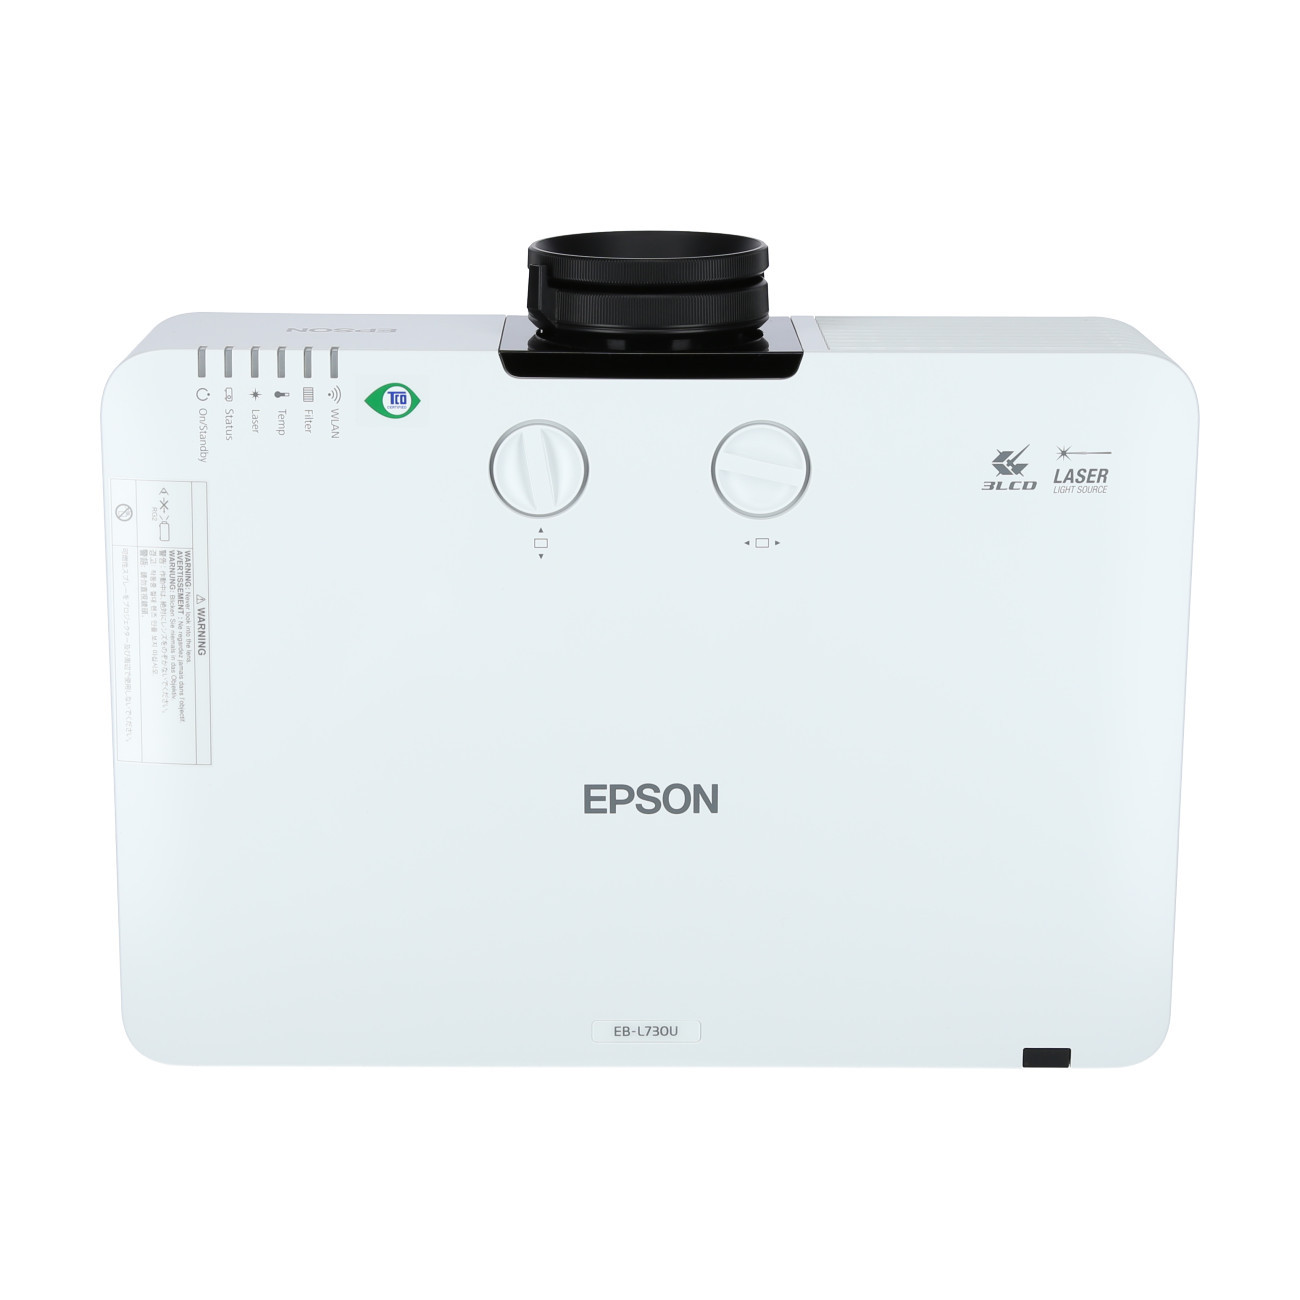 Vorschau: Epson EB-L730U weiß Laser-Beamer mit 7000 Lumen und WUXGA - Demo